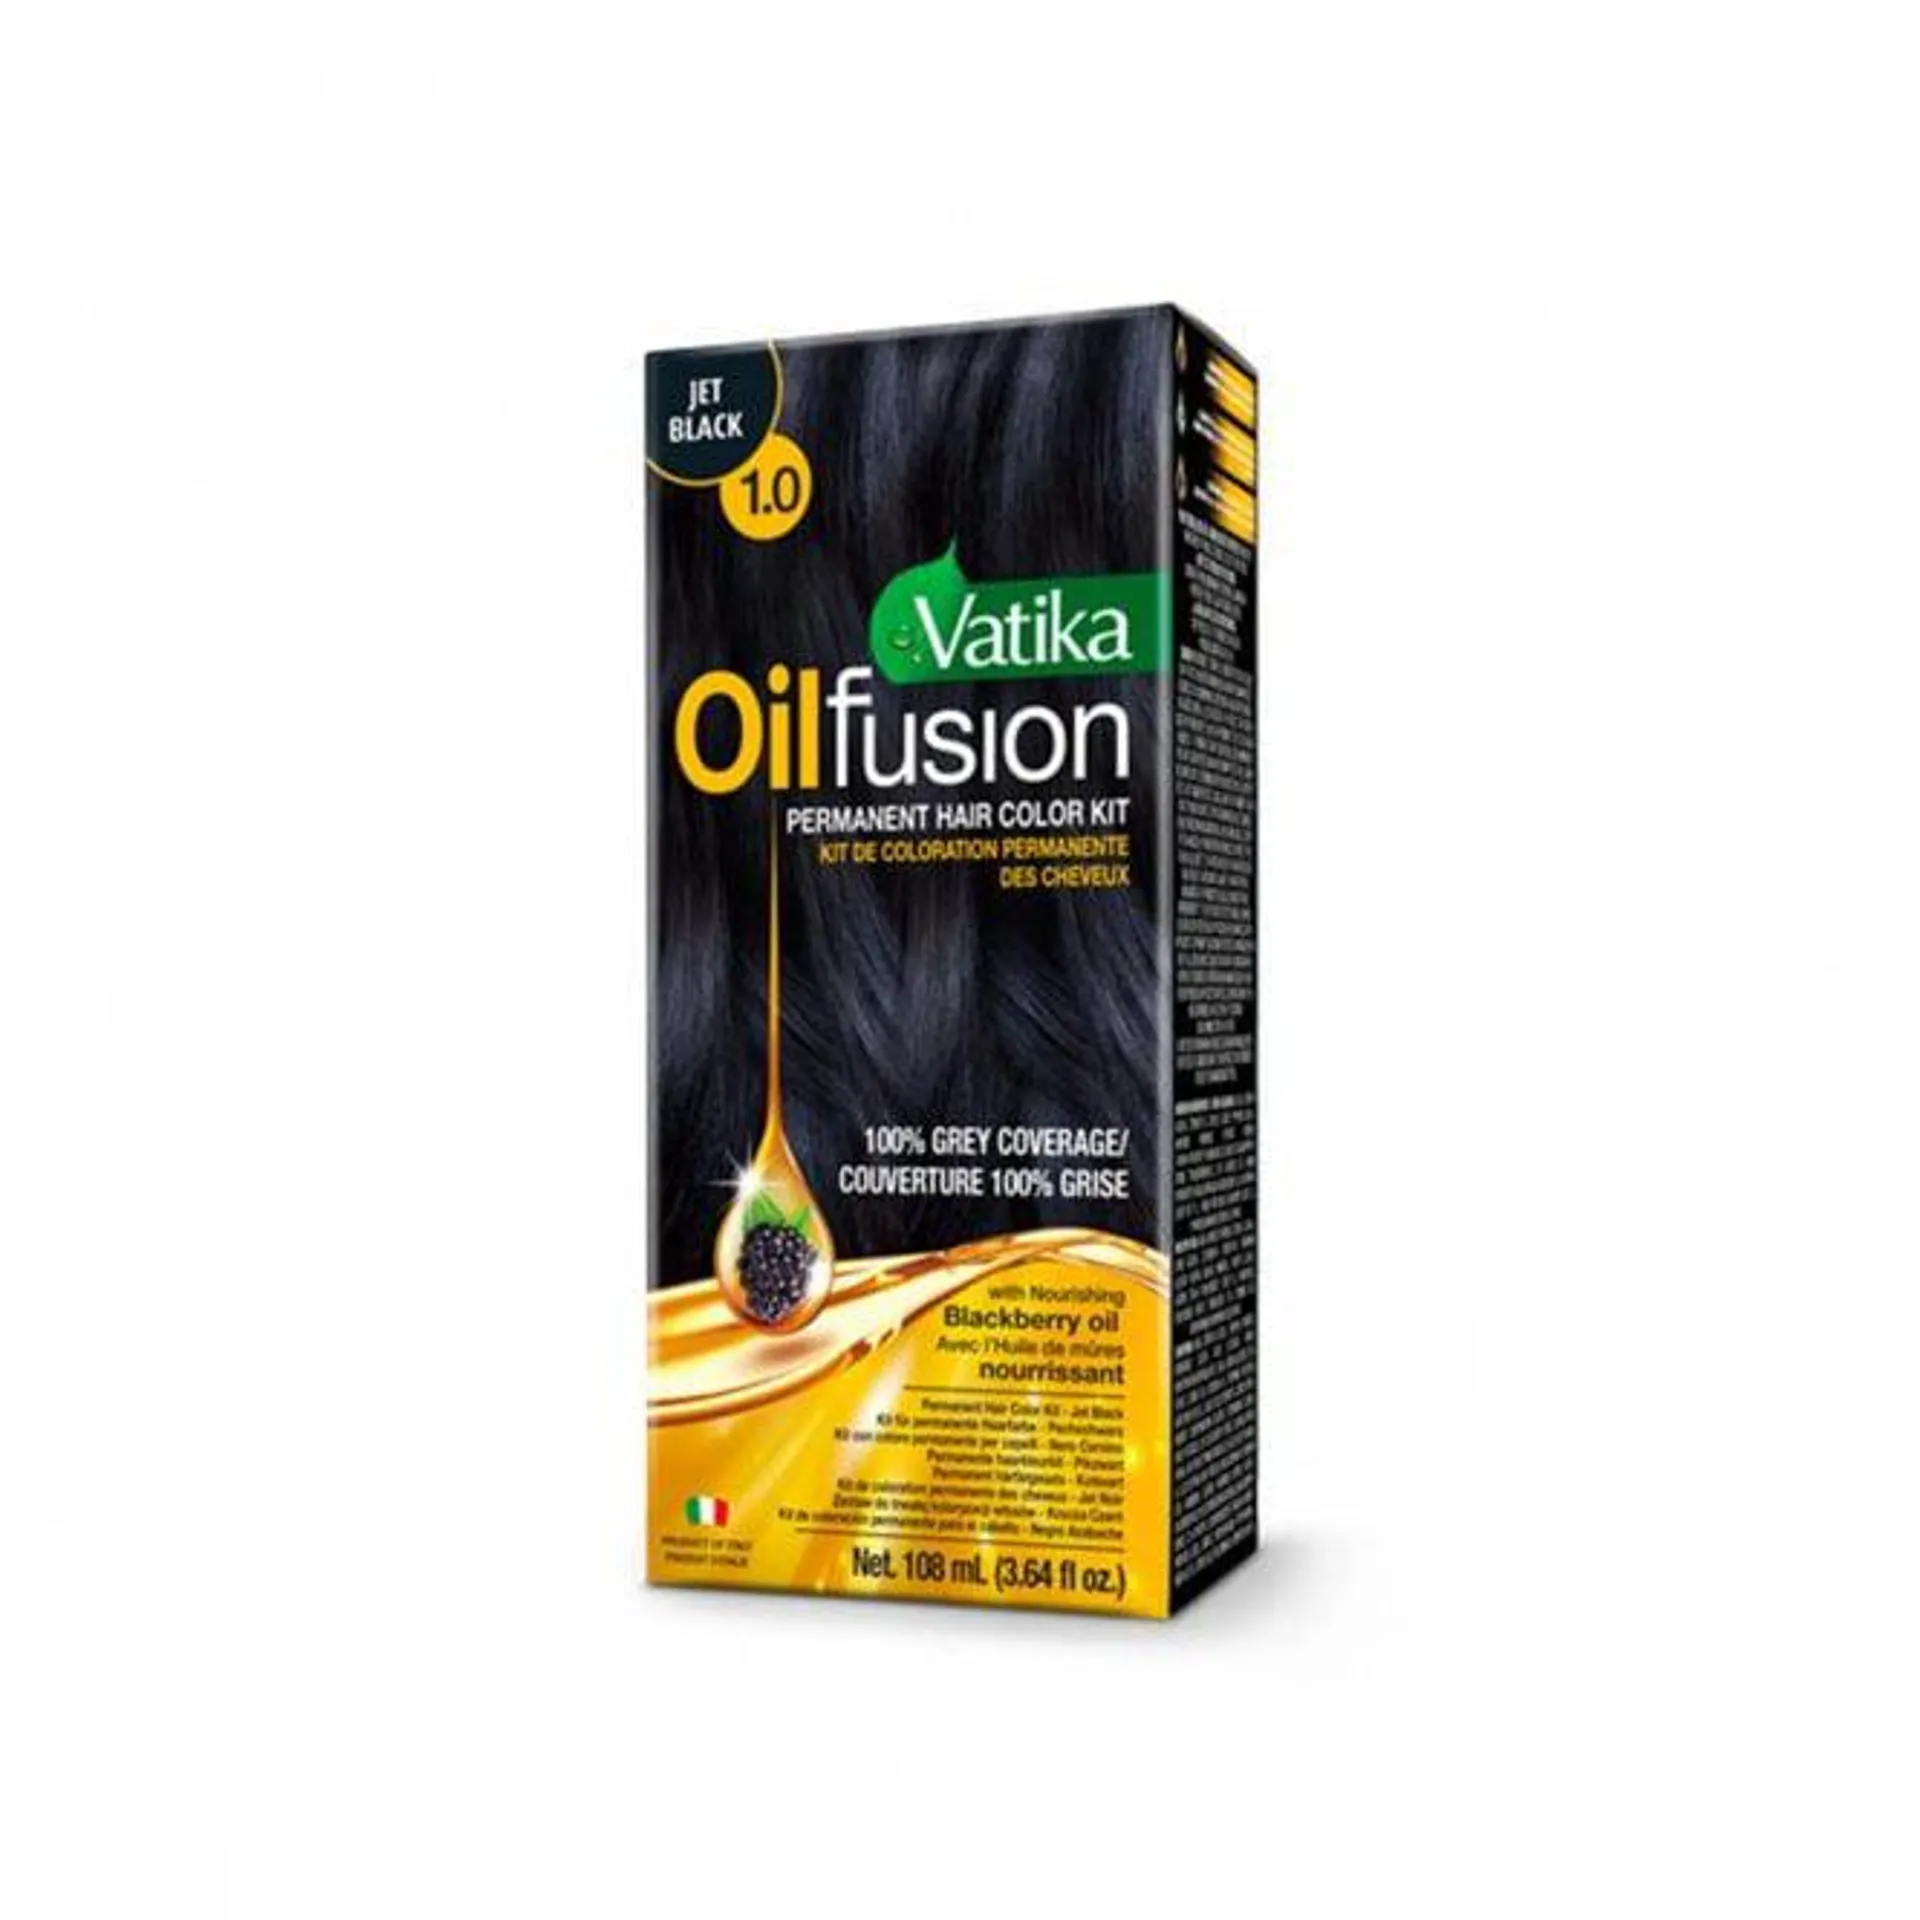 Oil Fusion Jet Black Dye Kit 108ml